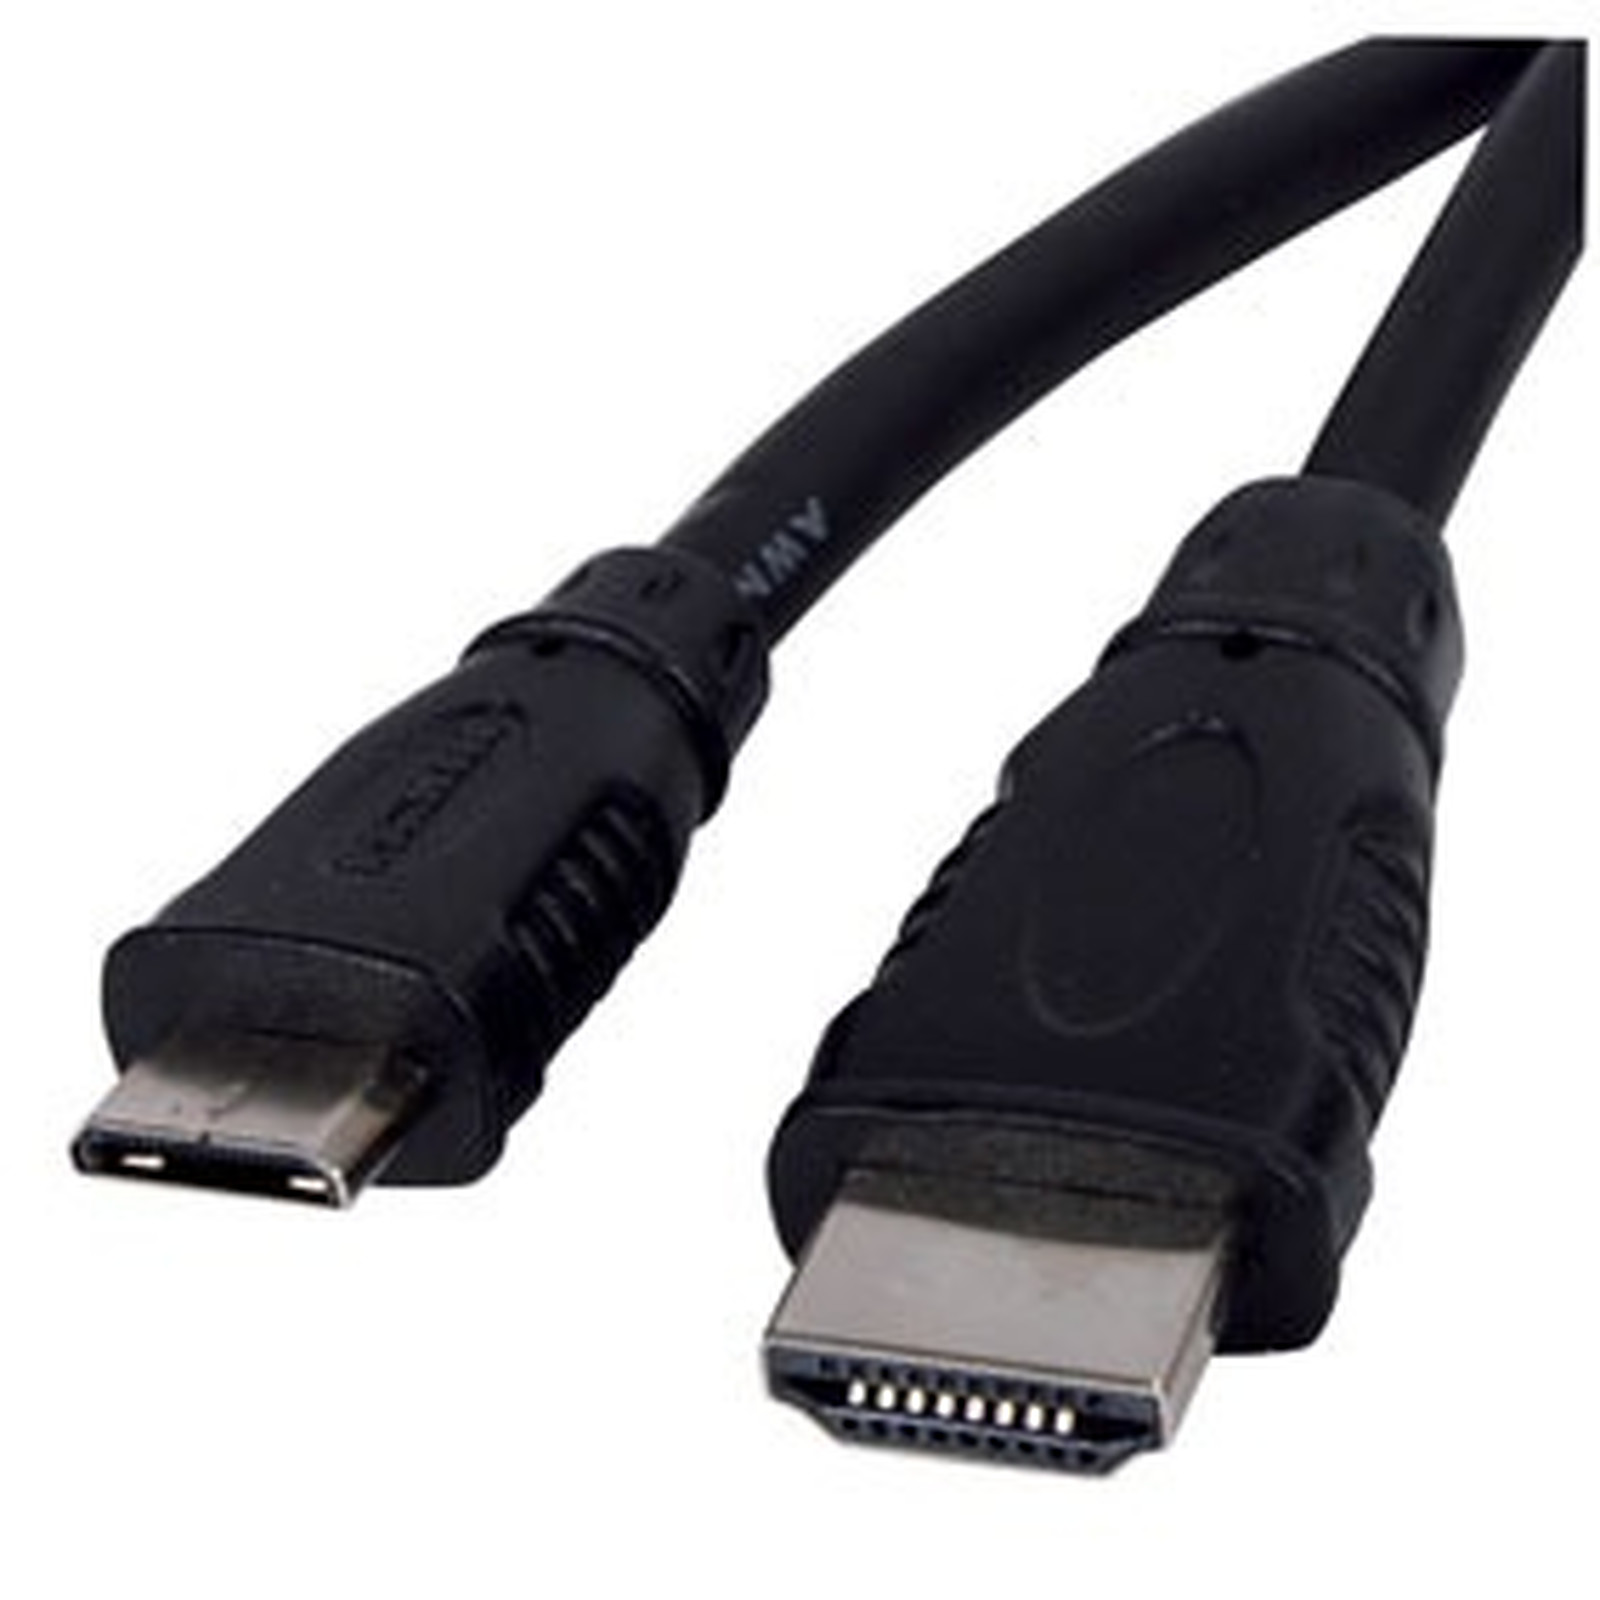 Cable HDMI male / mini HDMI male - (1 mètre) - HDMI Generique